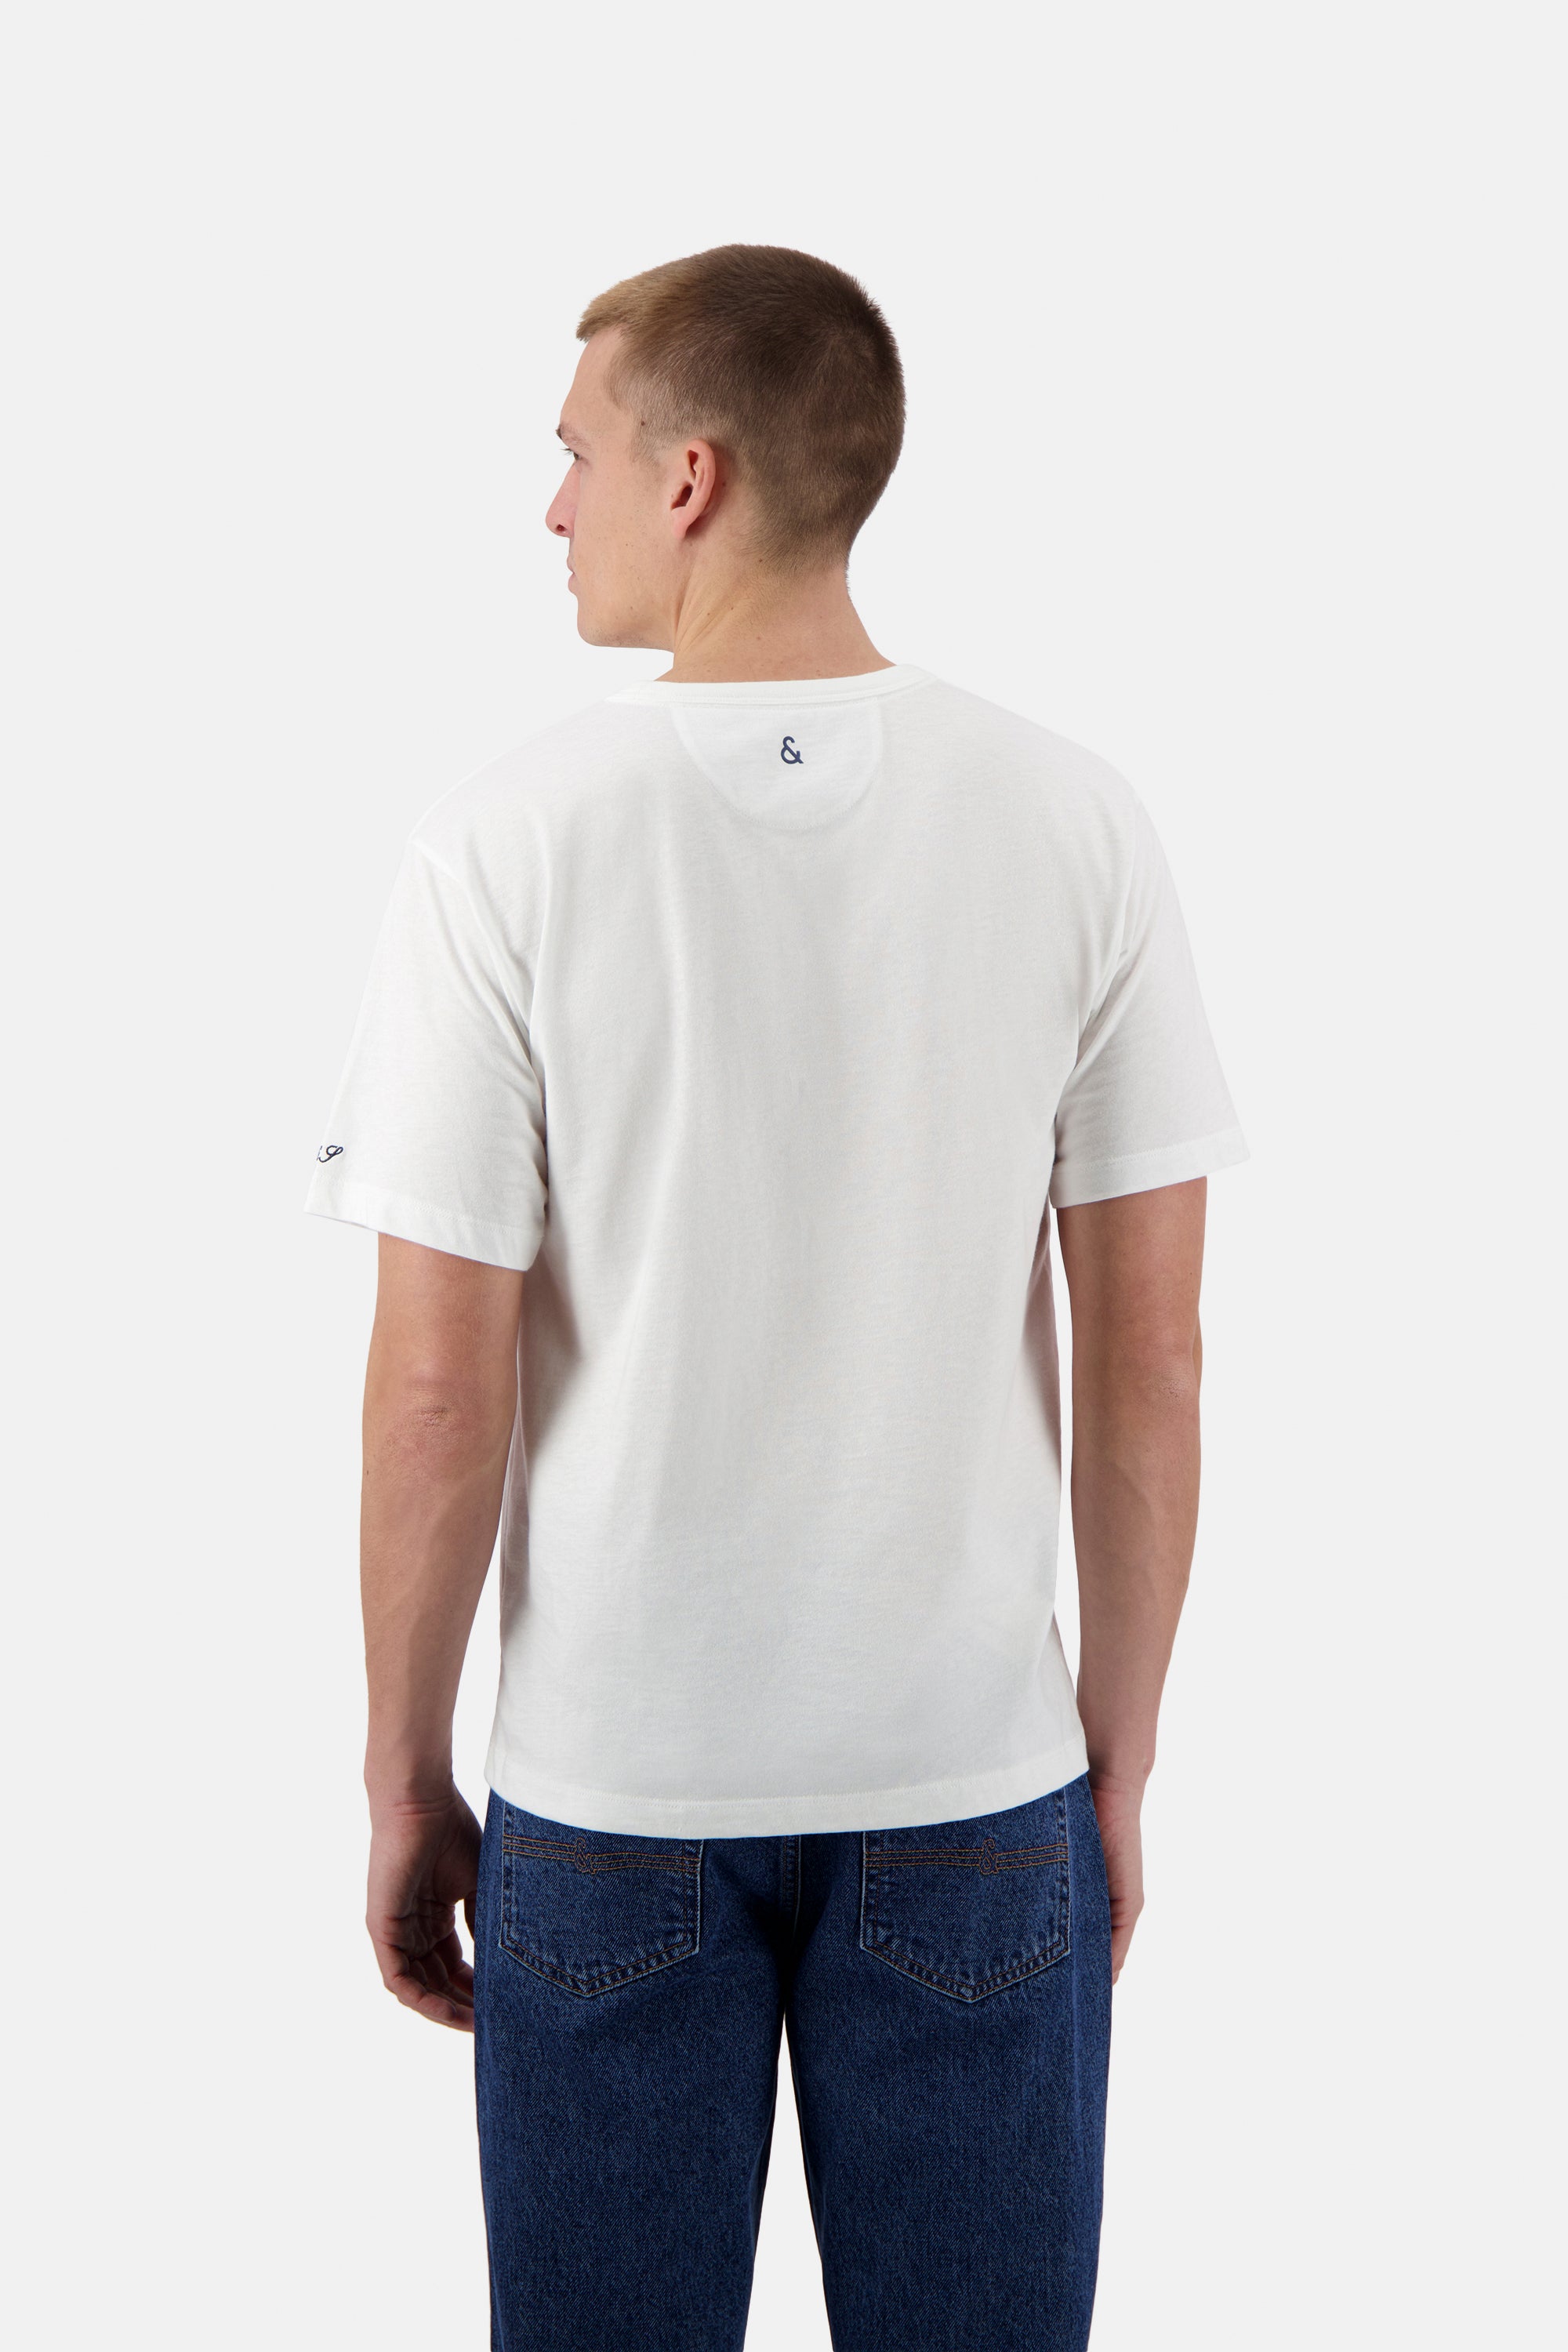 Herren T-Shirt, weiß, 100% Baumwolle von Colours & Sons